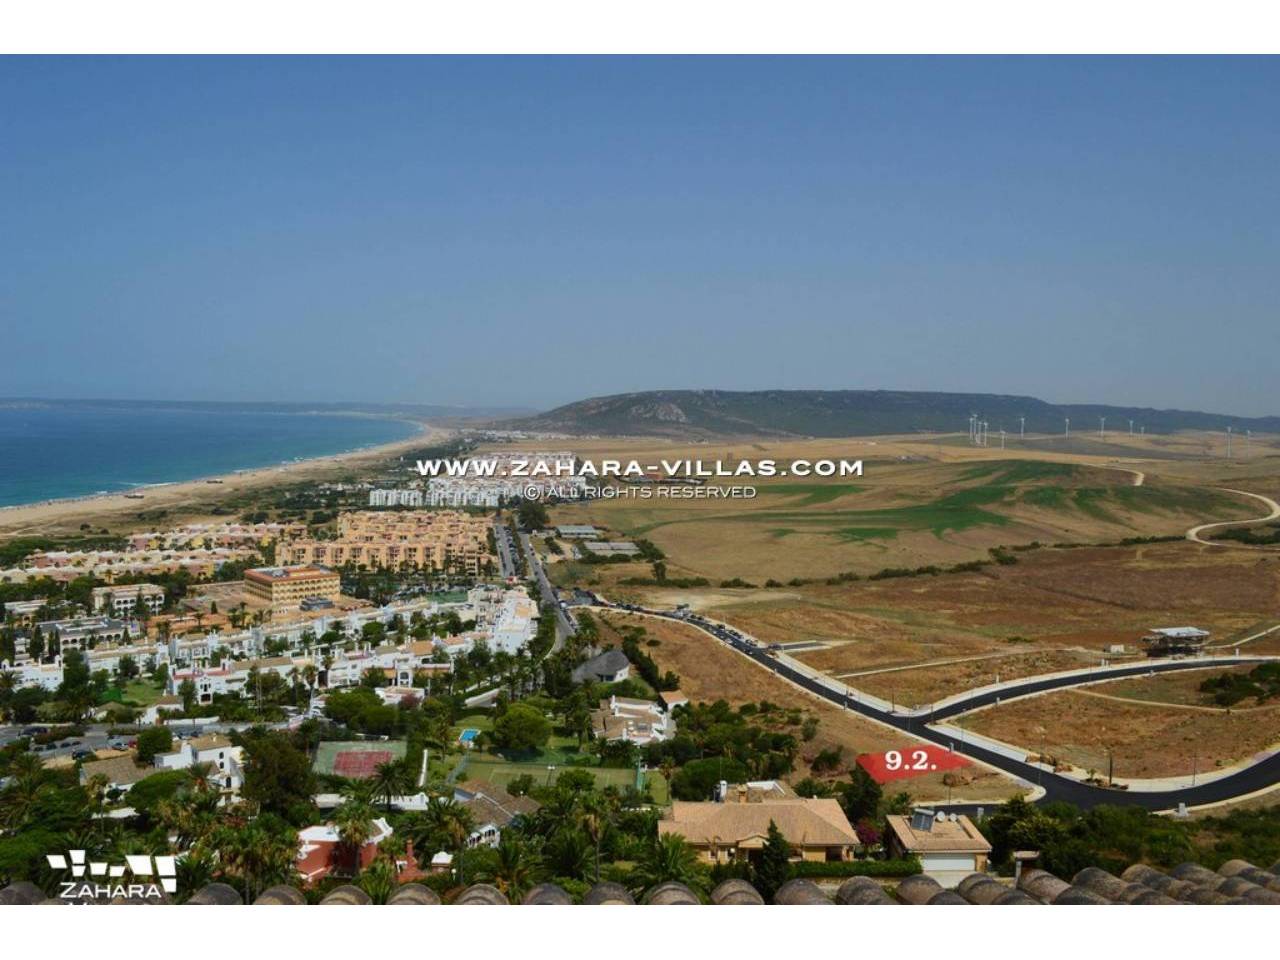 Imagen 1 de Grundstück in einem neuen Wohngebiet mit Blick auf das Meer und den zukünftigen Golfplatz